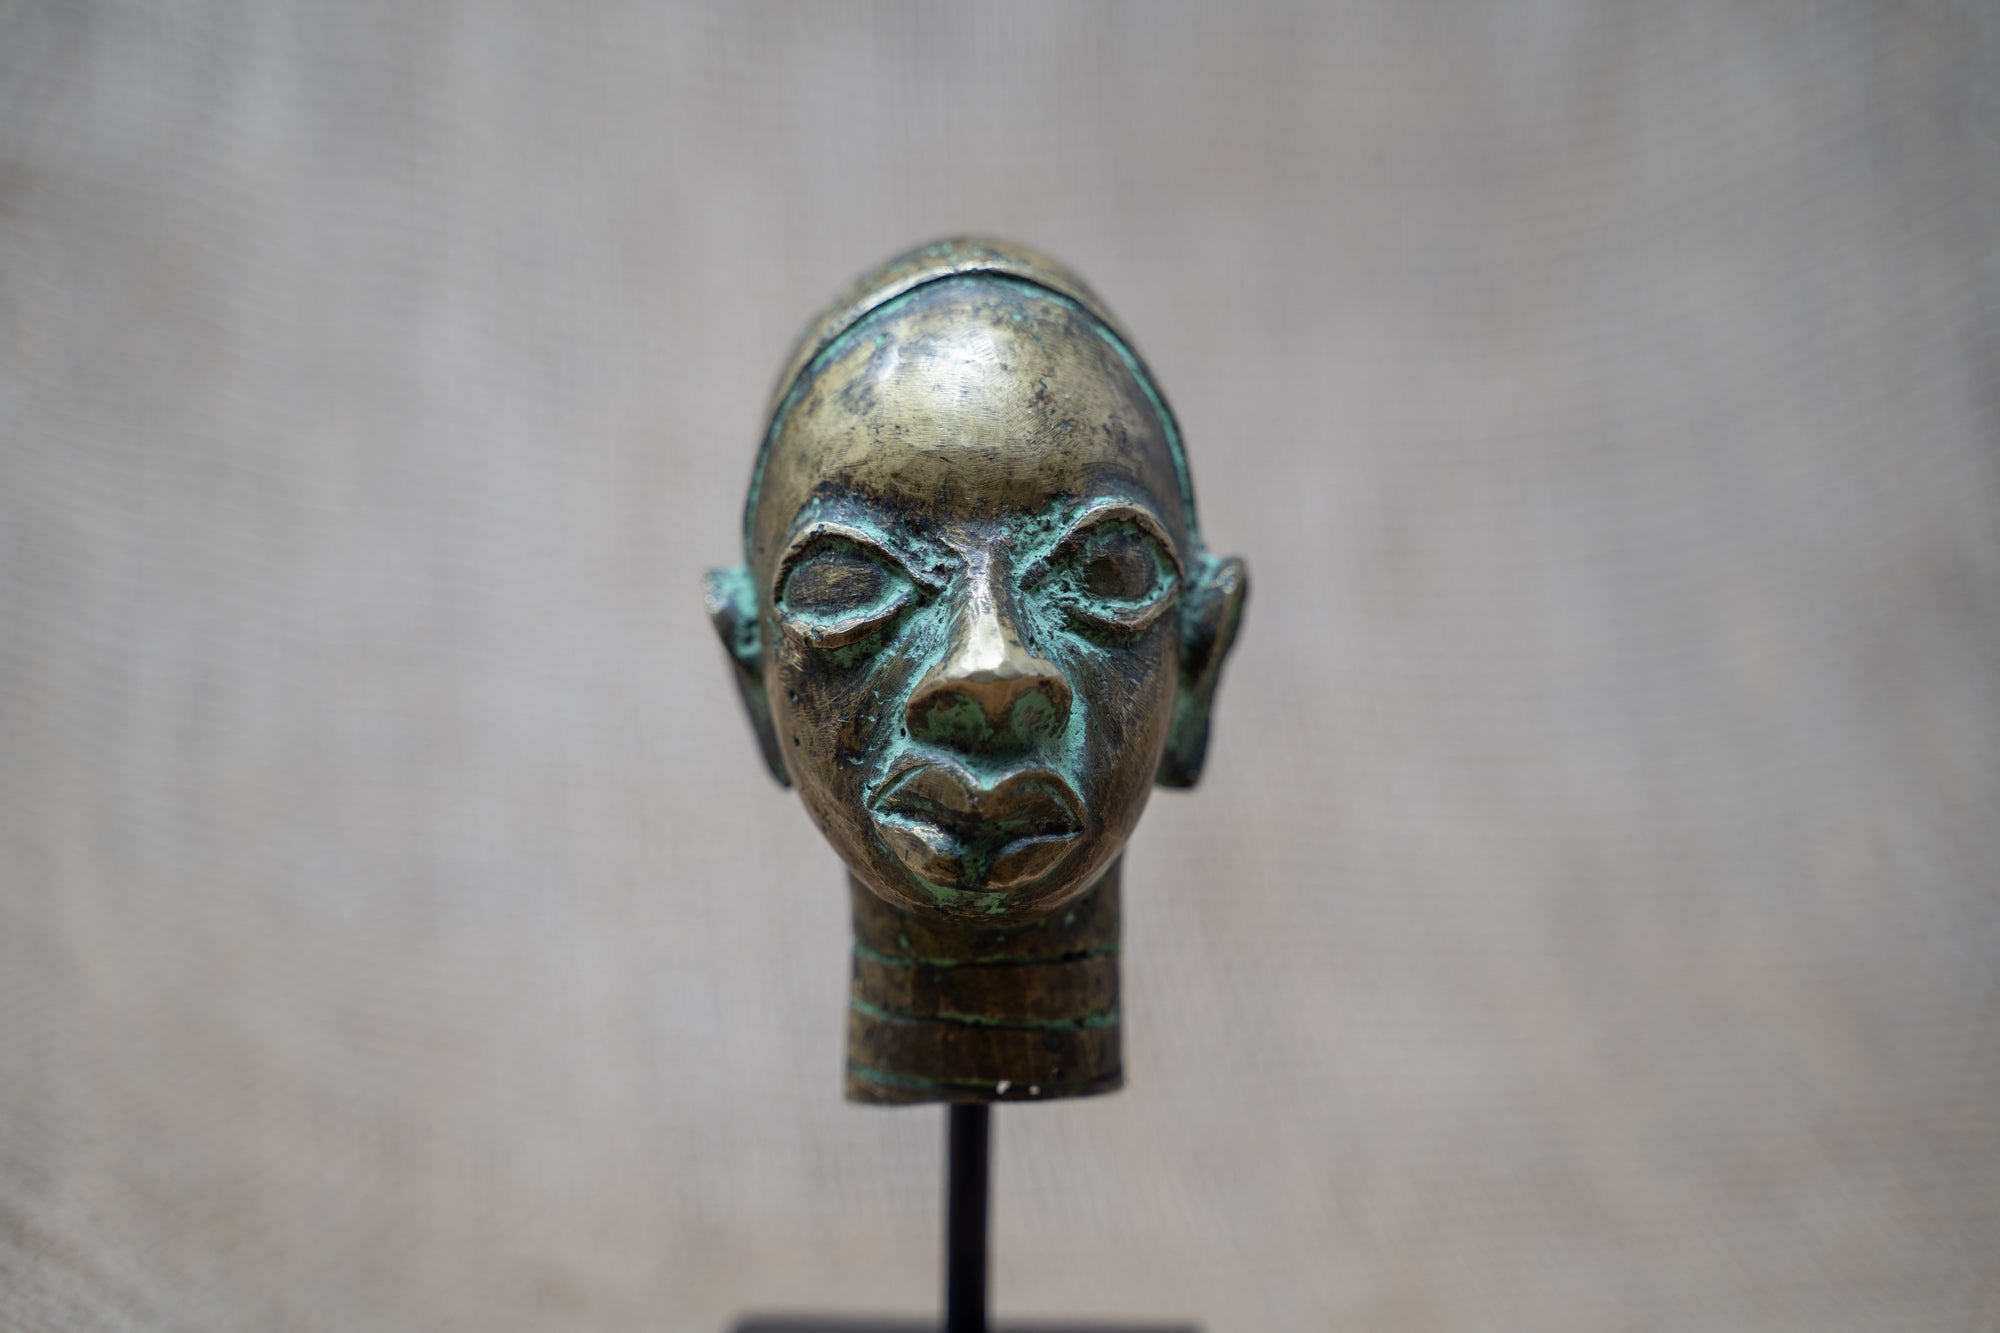 Benin Bronze Head - 37.8